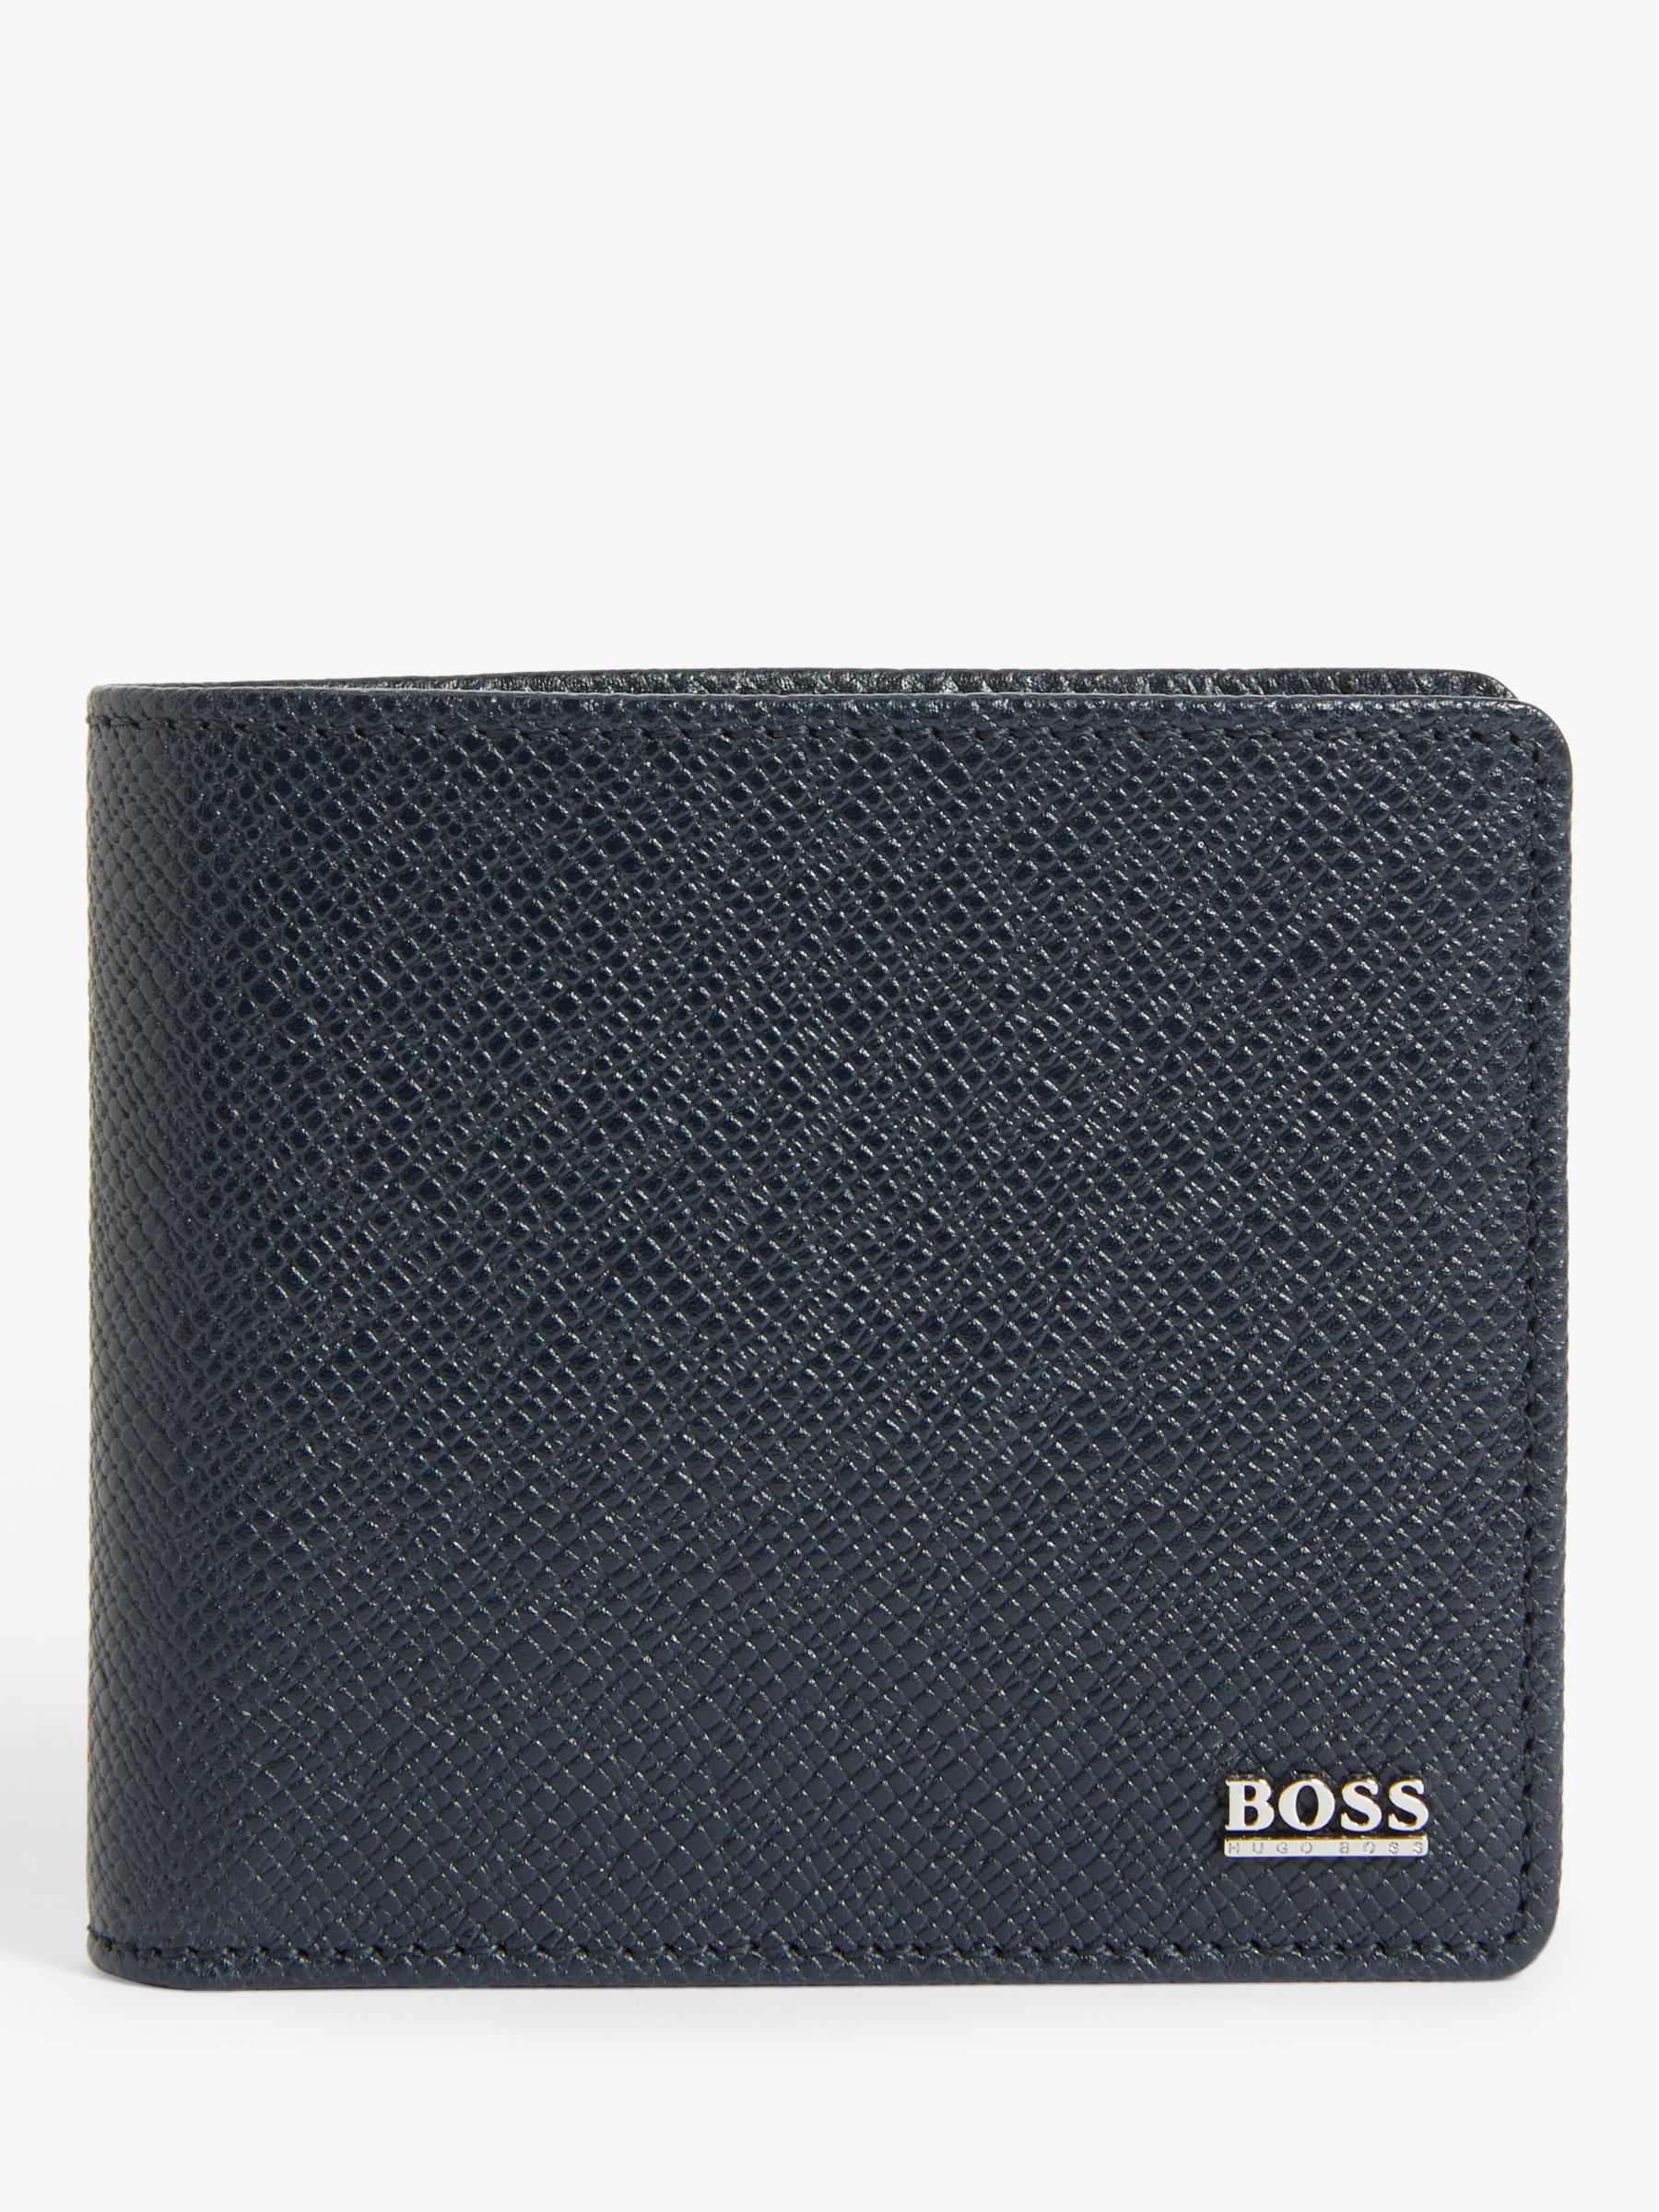 hugo boss wallet black friday